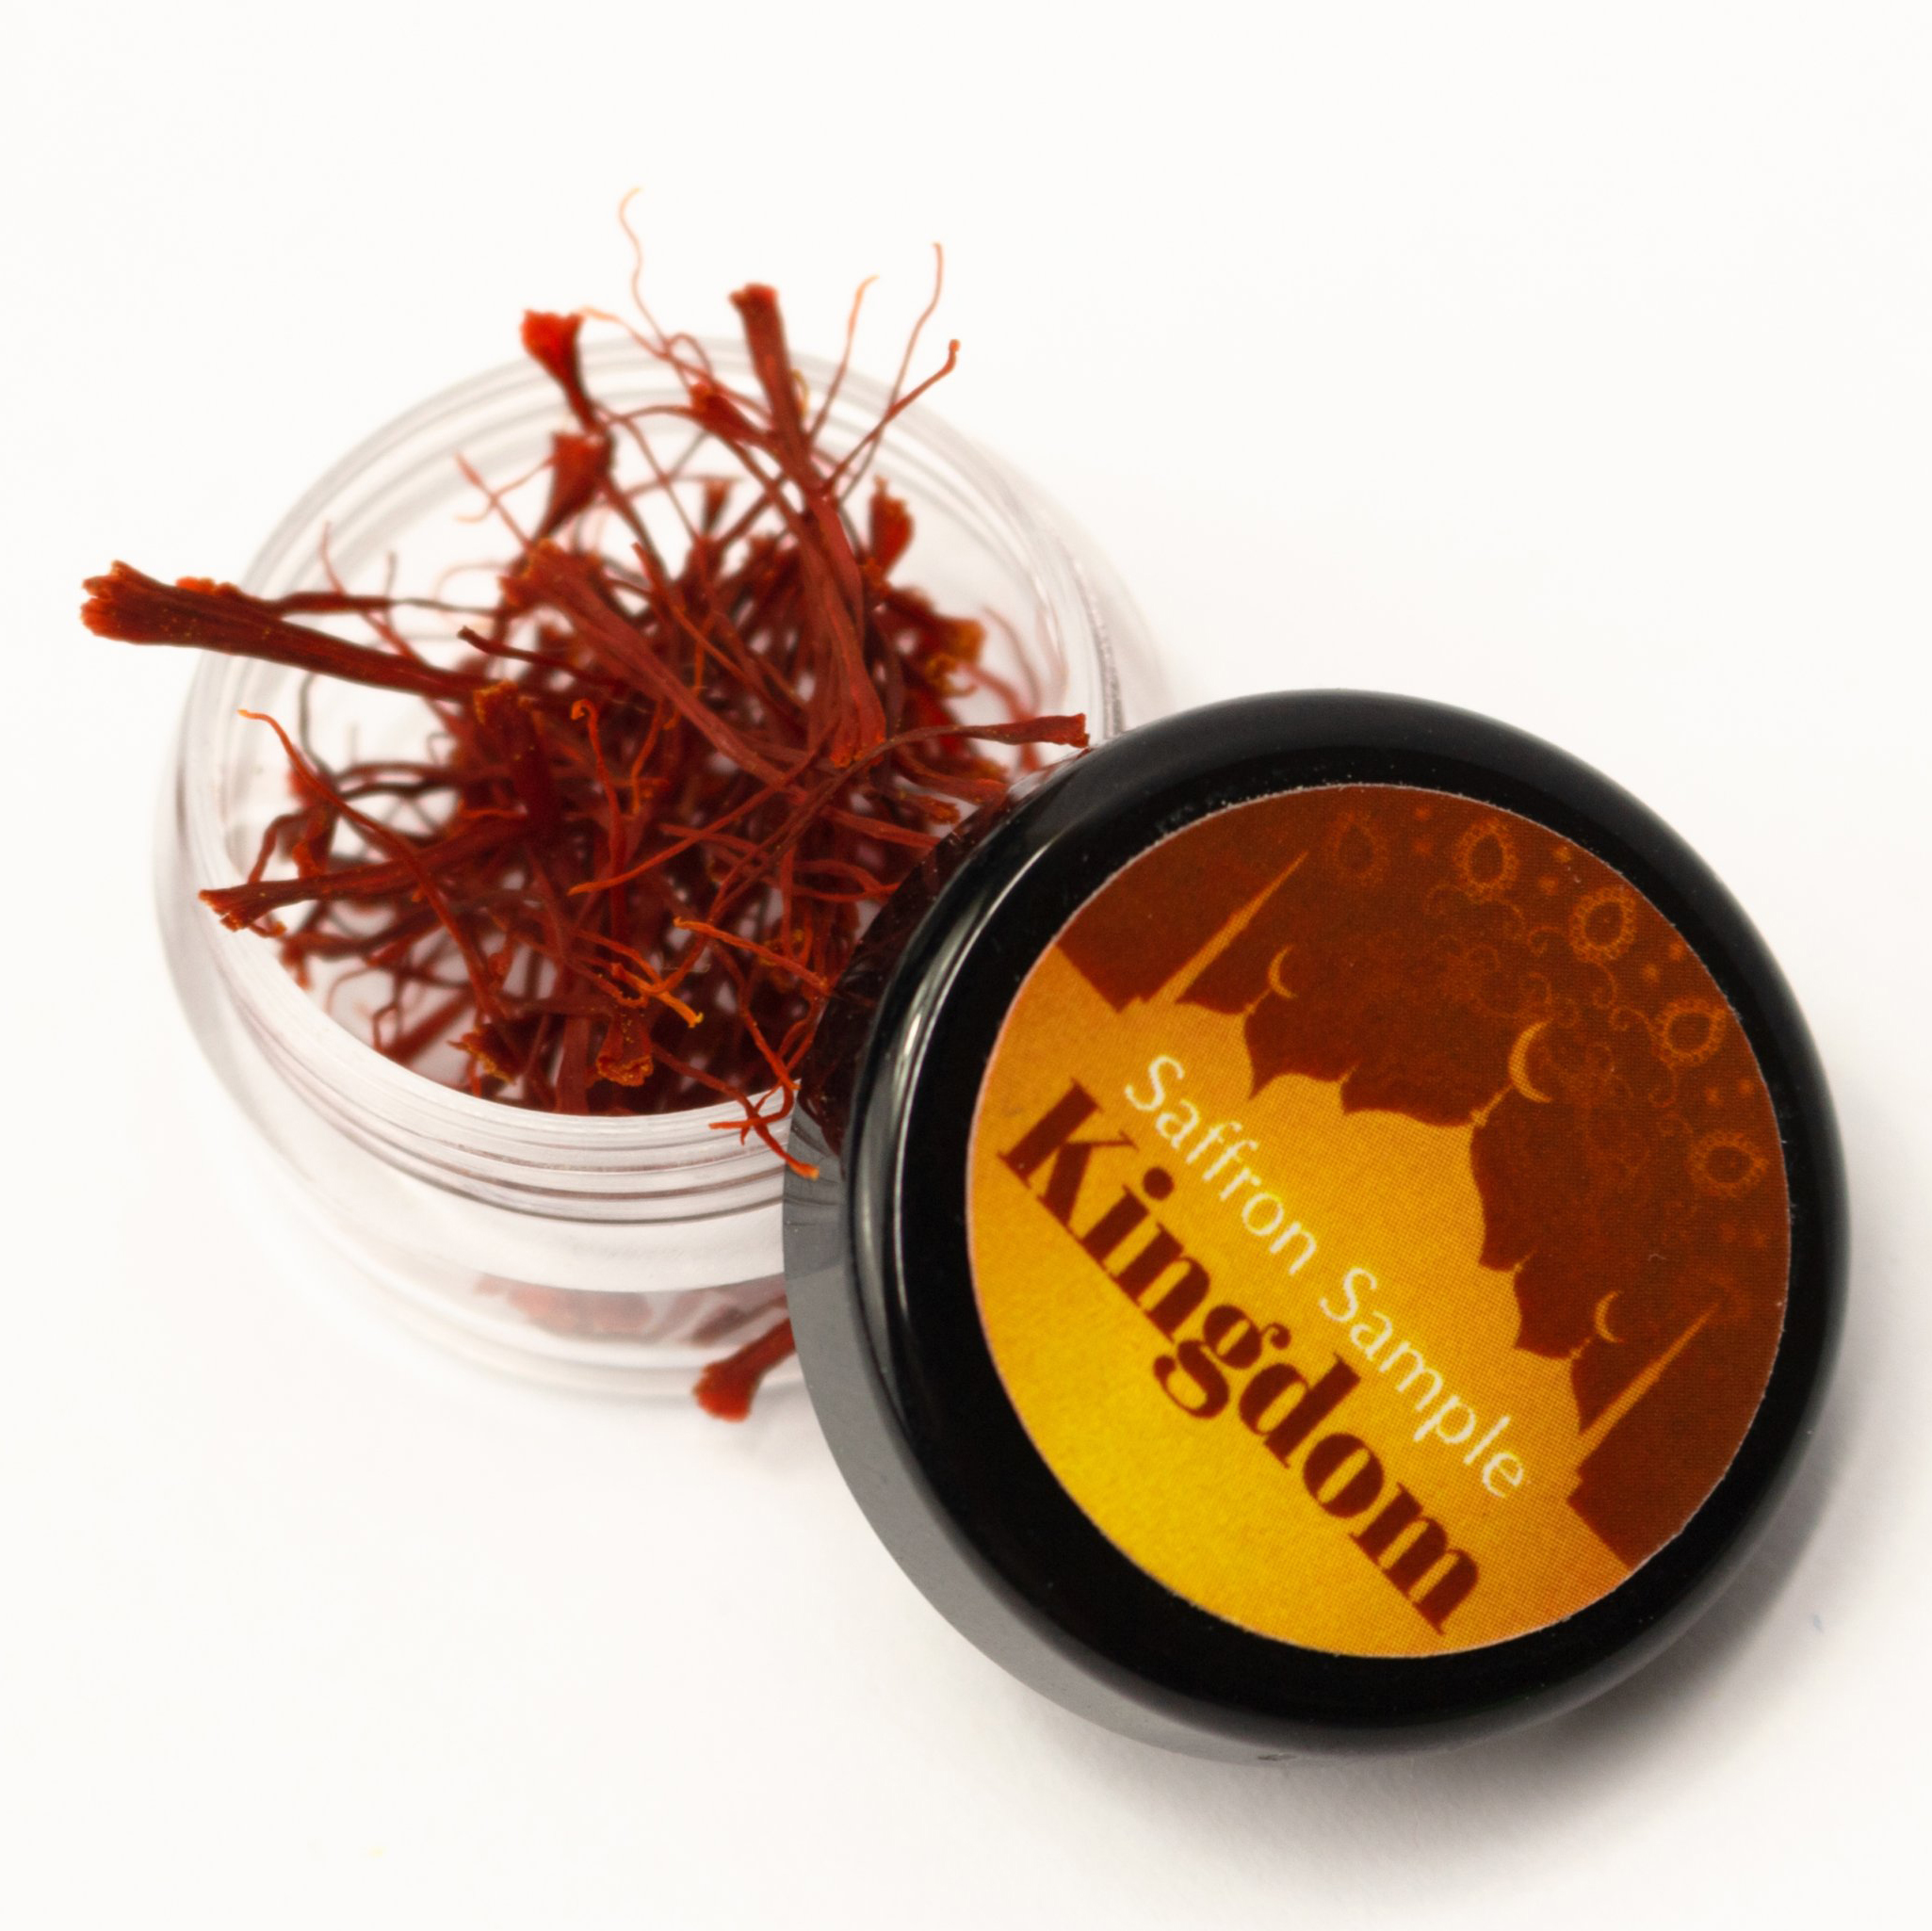 Saffron Kingdom Herb nhụy hoa nghệ tây Iran hộp 0.2 gram, hàng chính hãng super negin thượng hạng (Tặng bình nước thủy tinh)